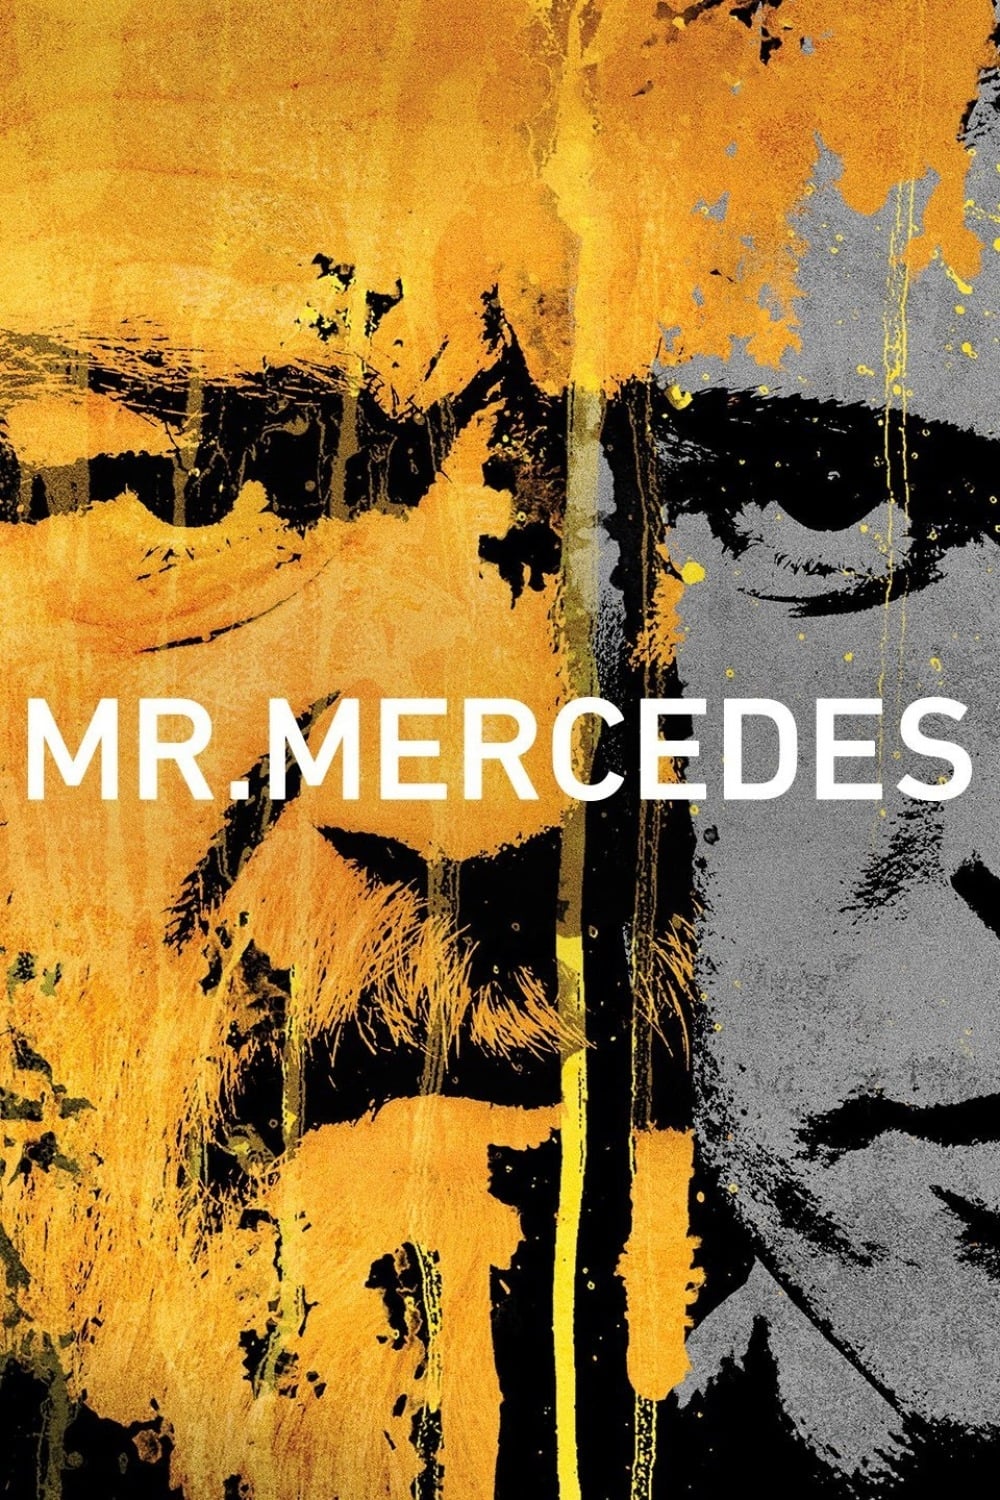 Mr. Mercedes Poster